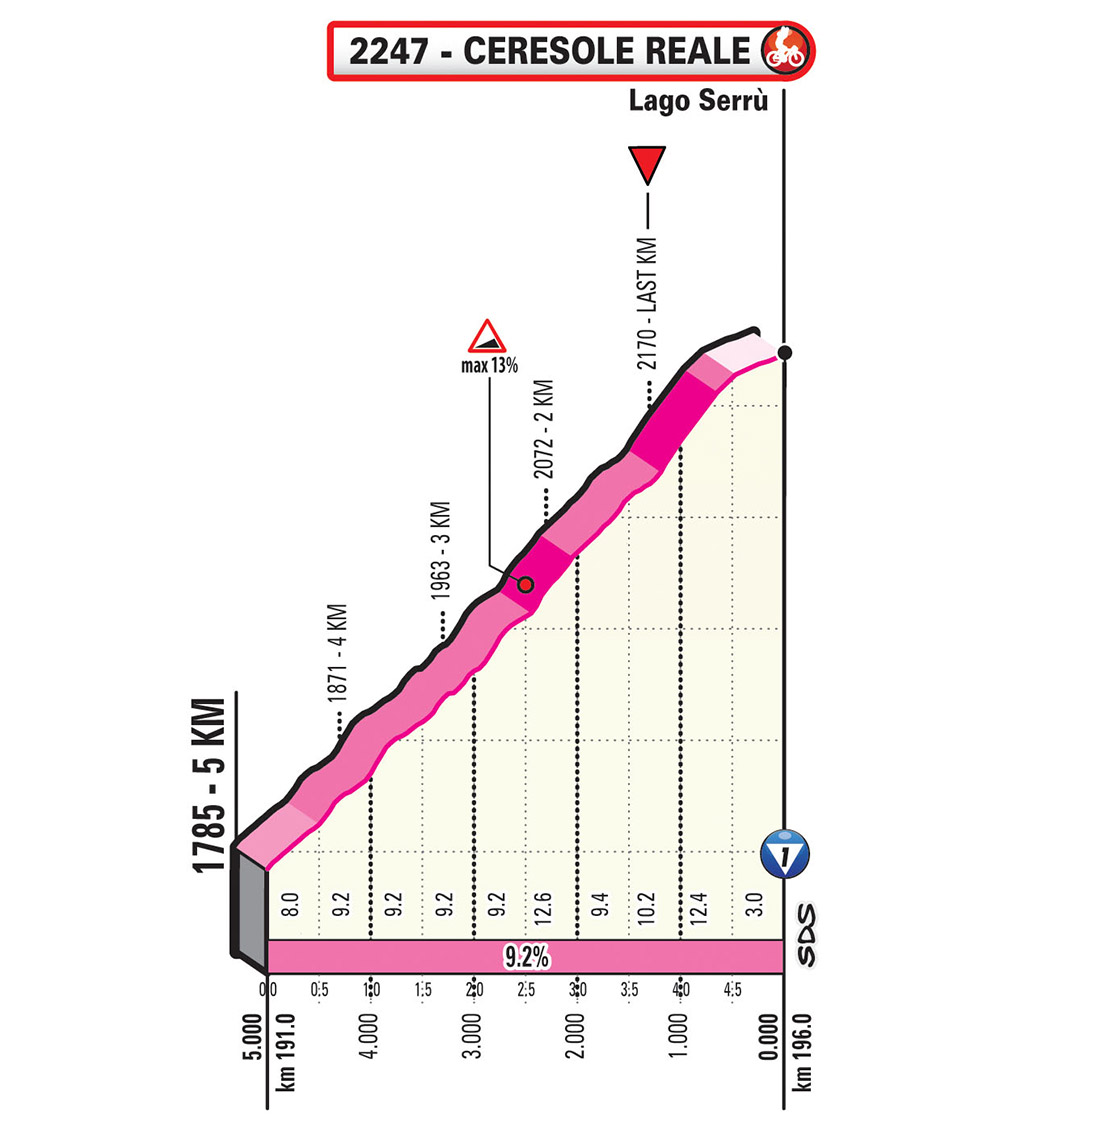 Giro-dItalia-2019-Tappa-13-UKM.jpg